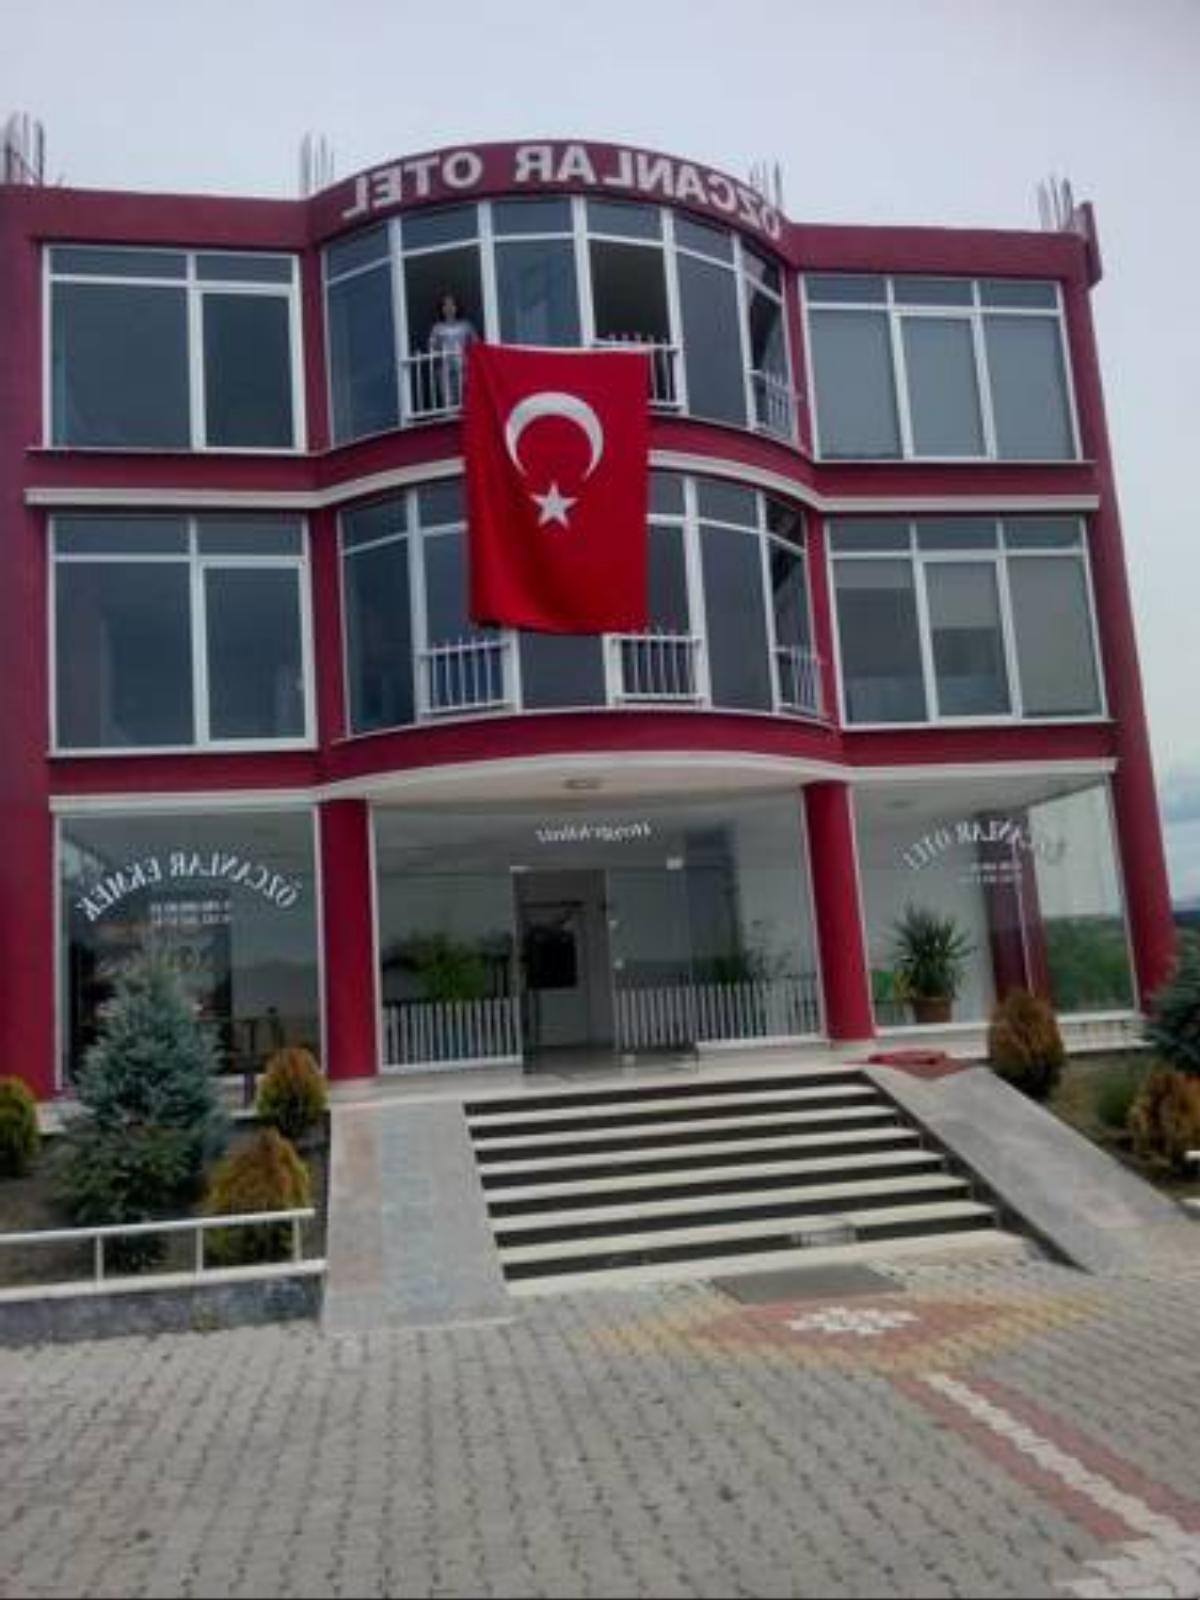 Ozcanlar Otel Hotel Hamdibey Turkey